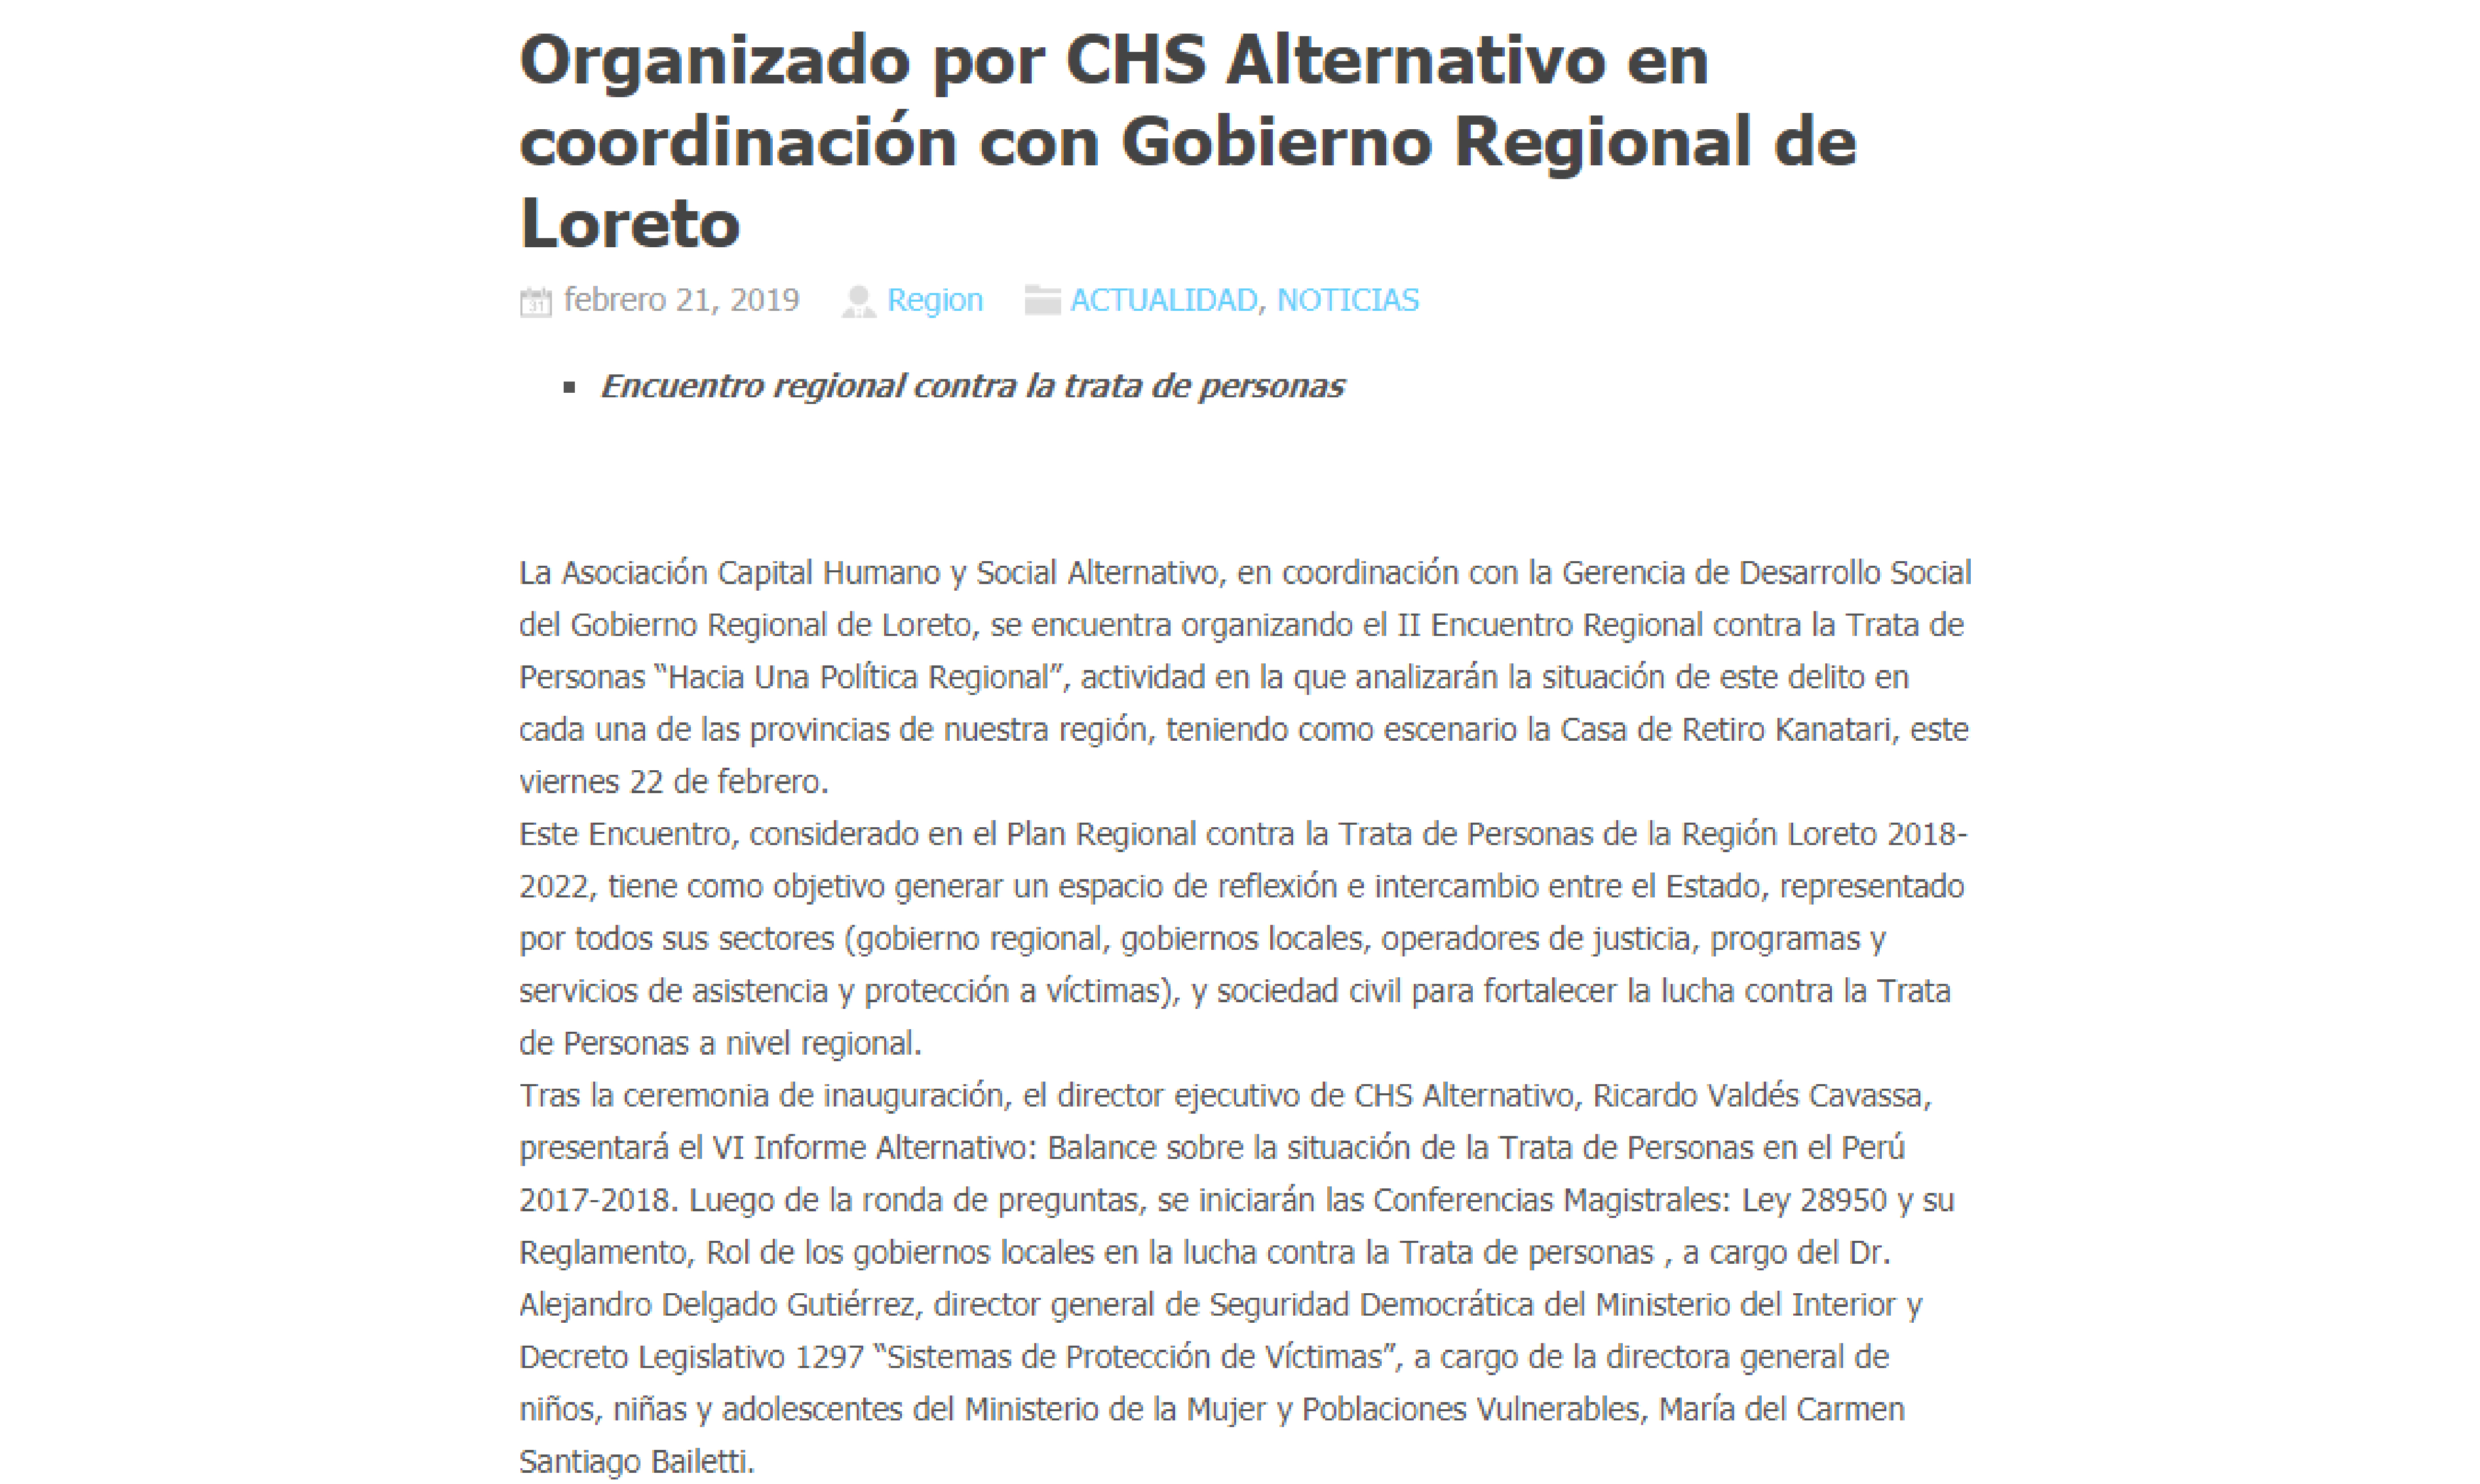 Encuentro regional organizado por CHS Alternativo en coordinación con gobierno regional de Loreto